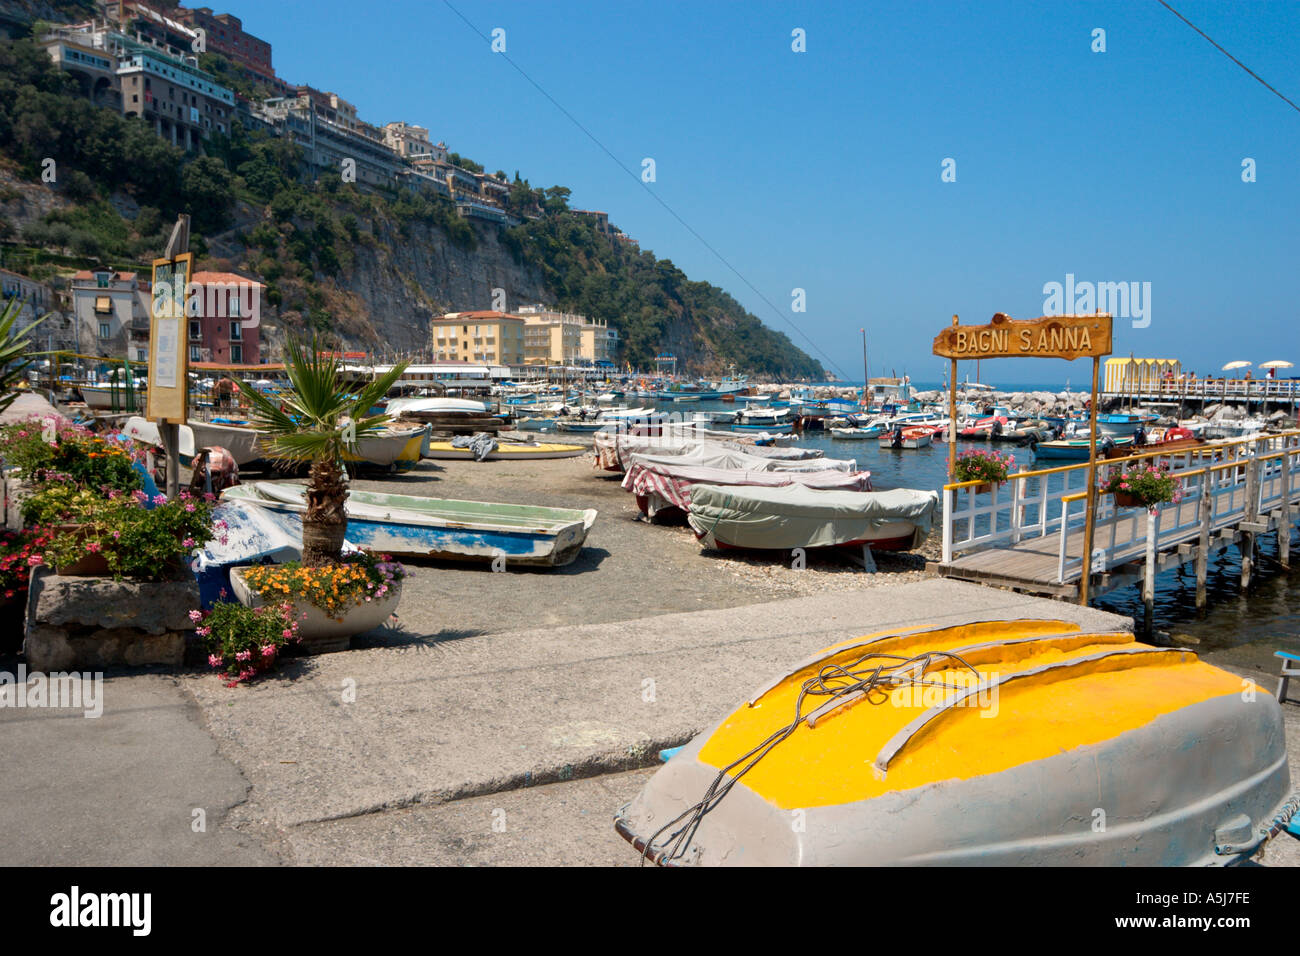 Marina Grande, Sorrento, Neapolitan Riviera, Italy Stock Photo